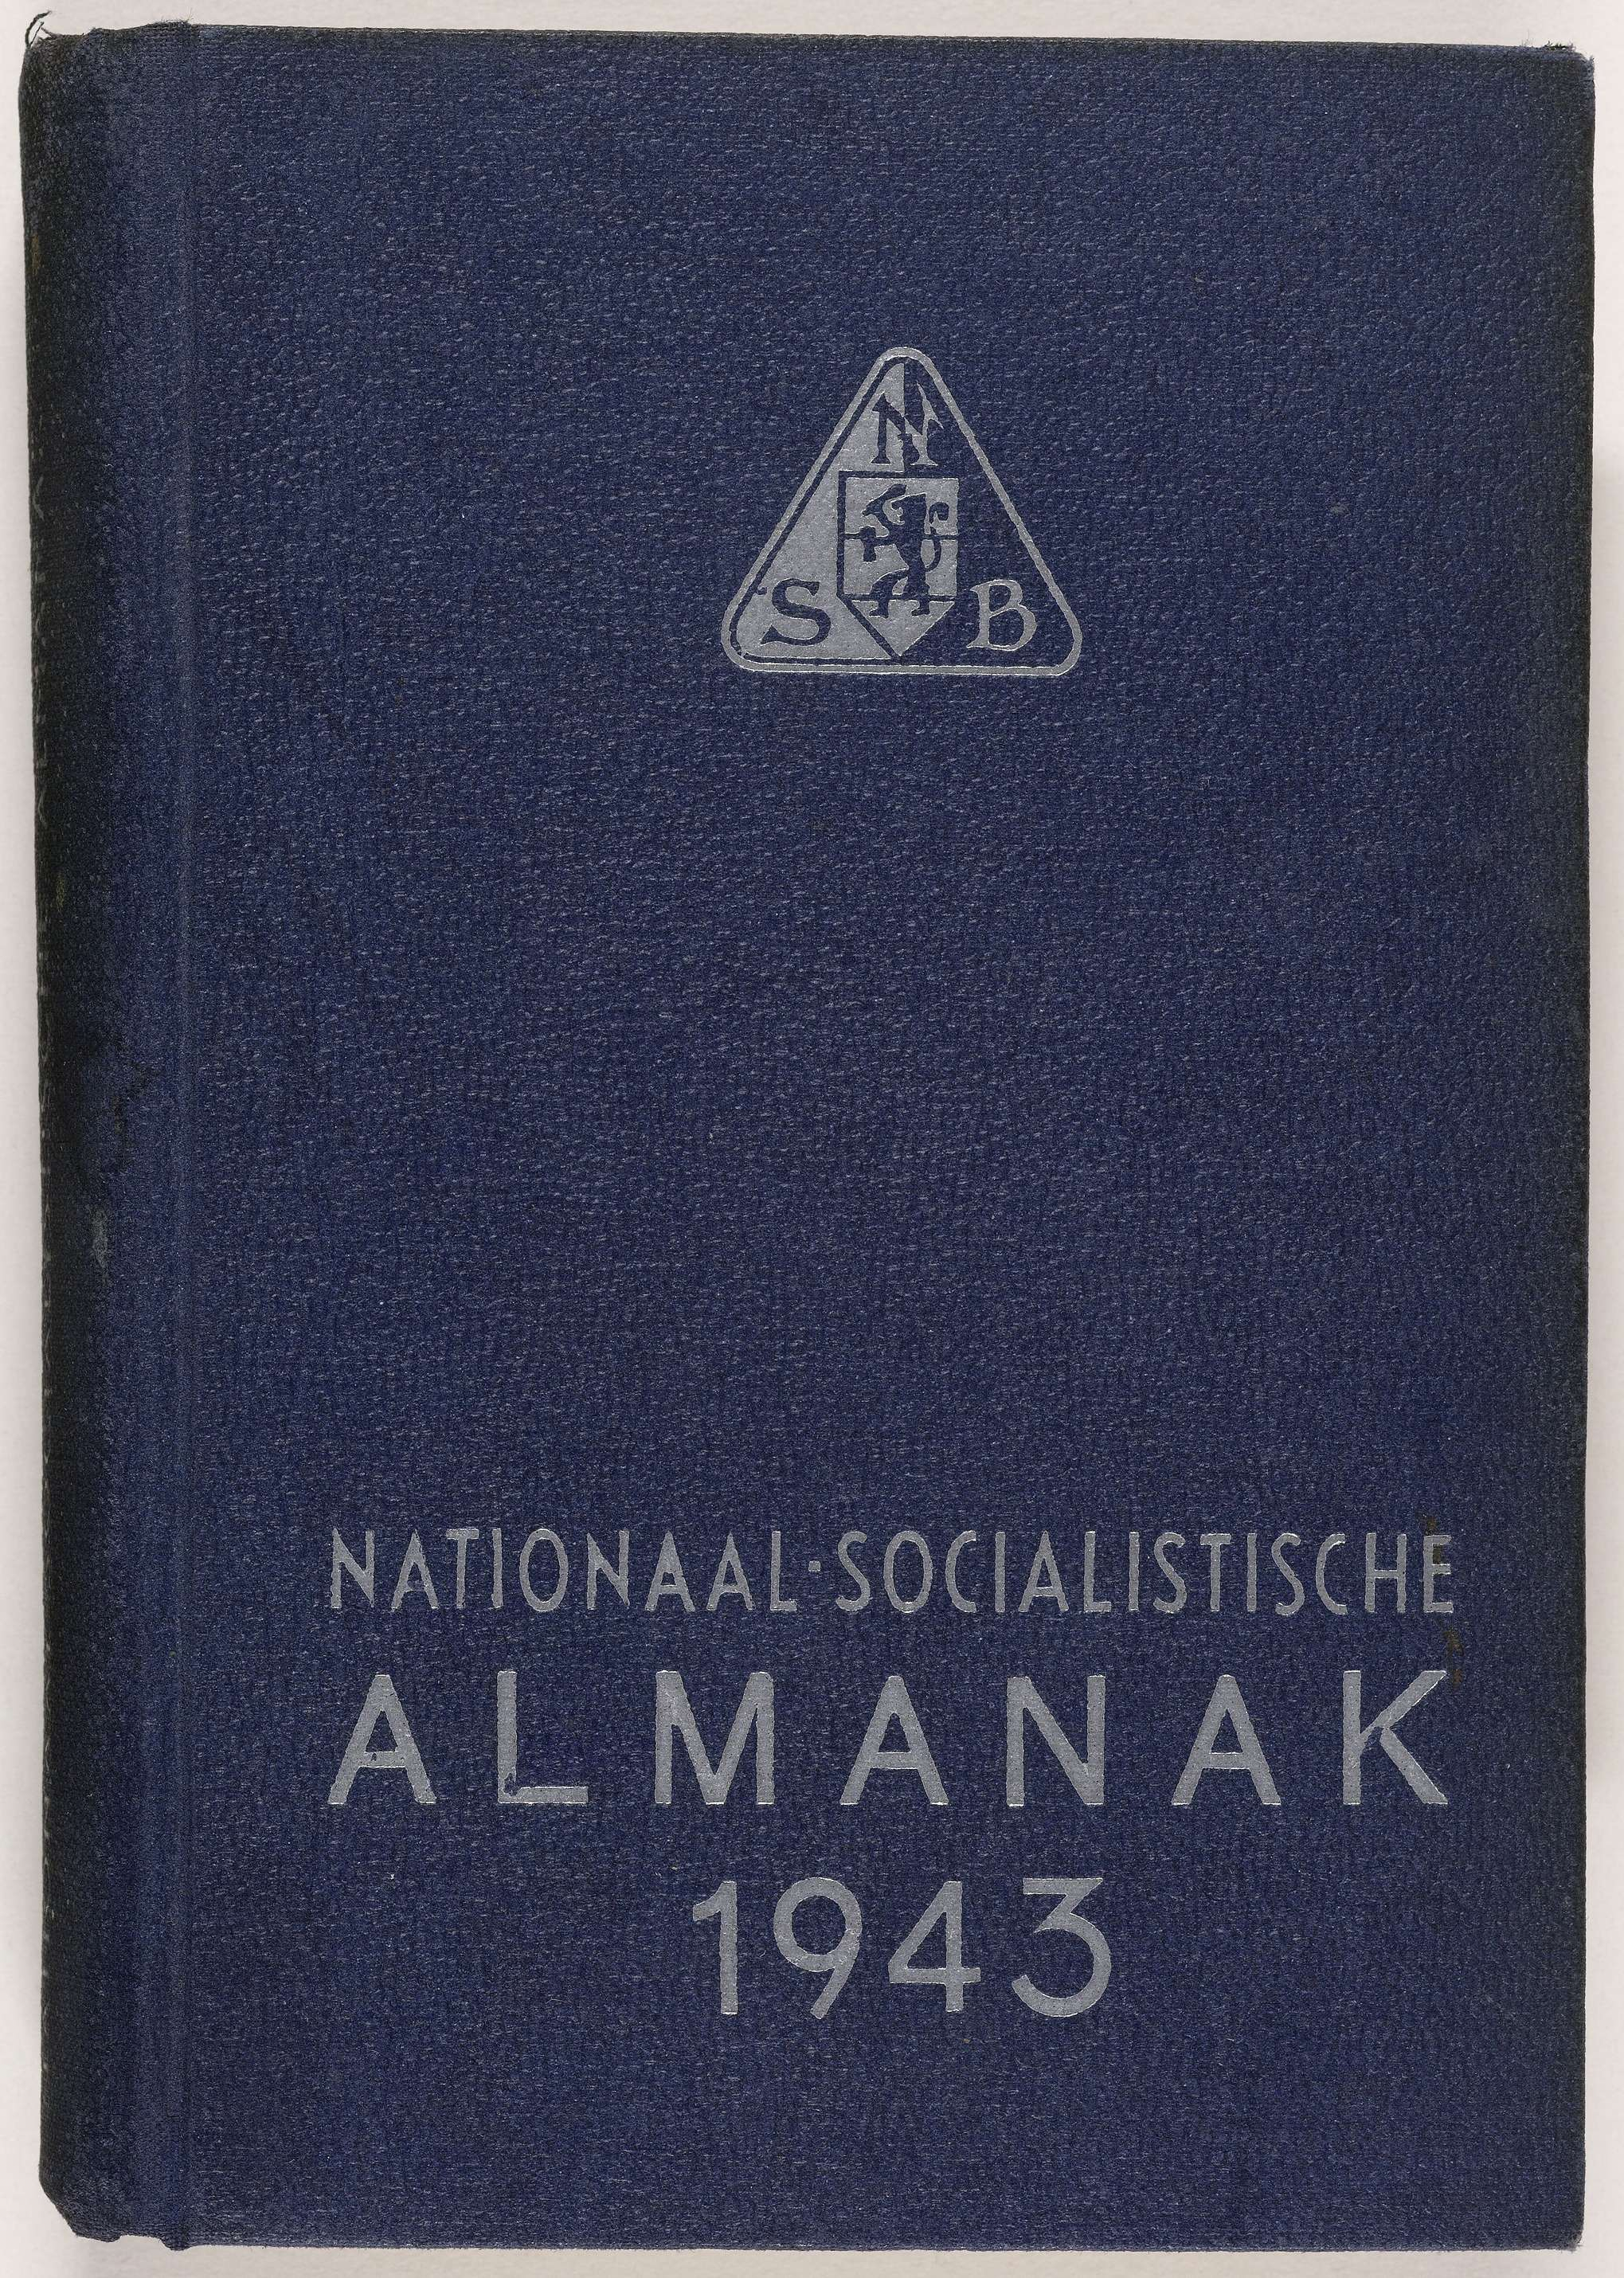 De NSB almanak van 1943, met daarin de namen van de NSB'ers die vanuit Indonesië naar Suriname zijn overgebracht en gevangen zitten in Kamp Jodensavanne